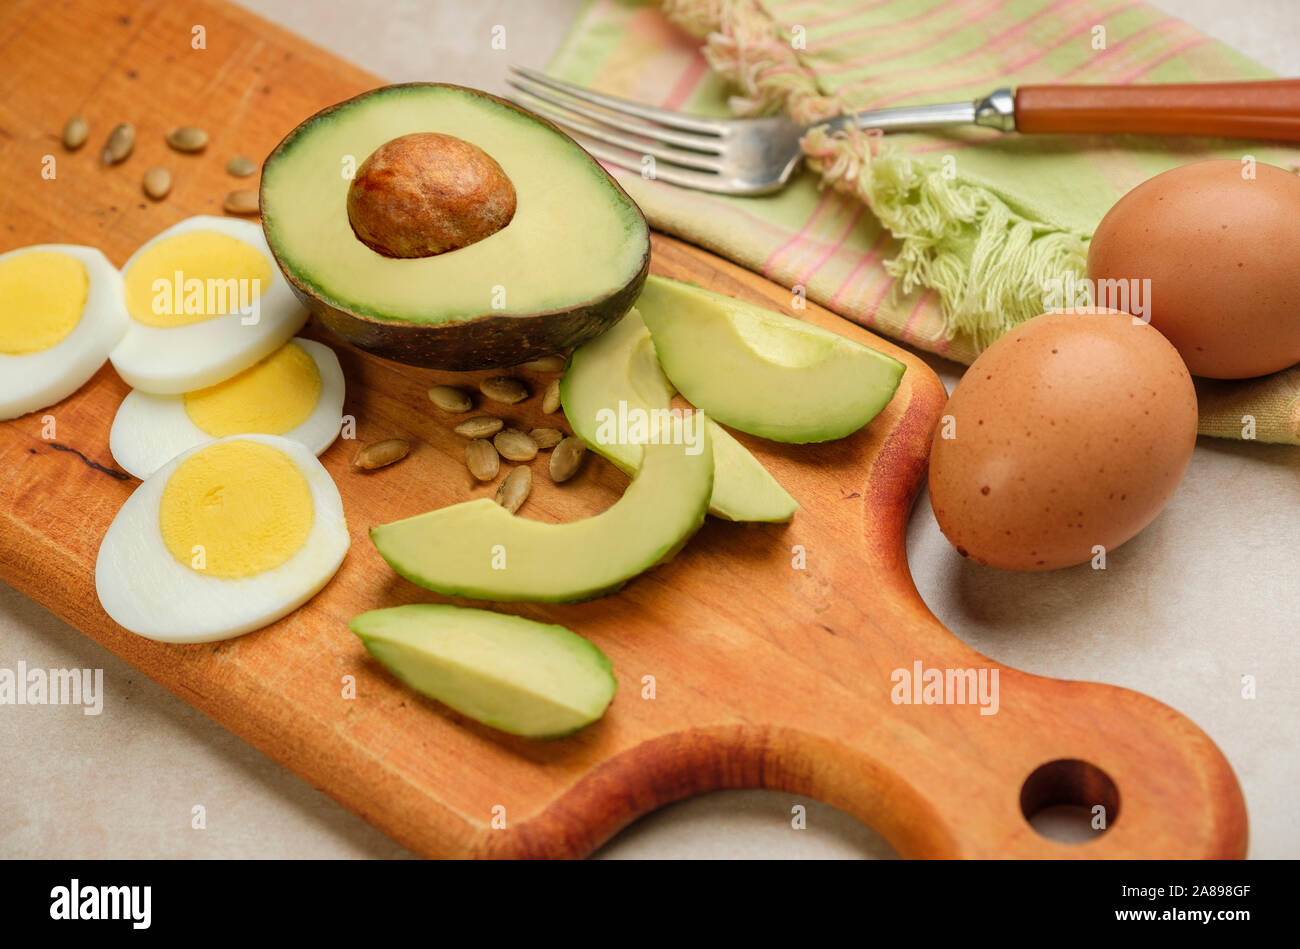 Avocat, œuf et graines de tournesol sur planche à découper Banque D'Images